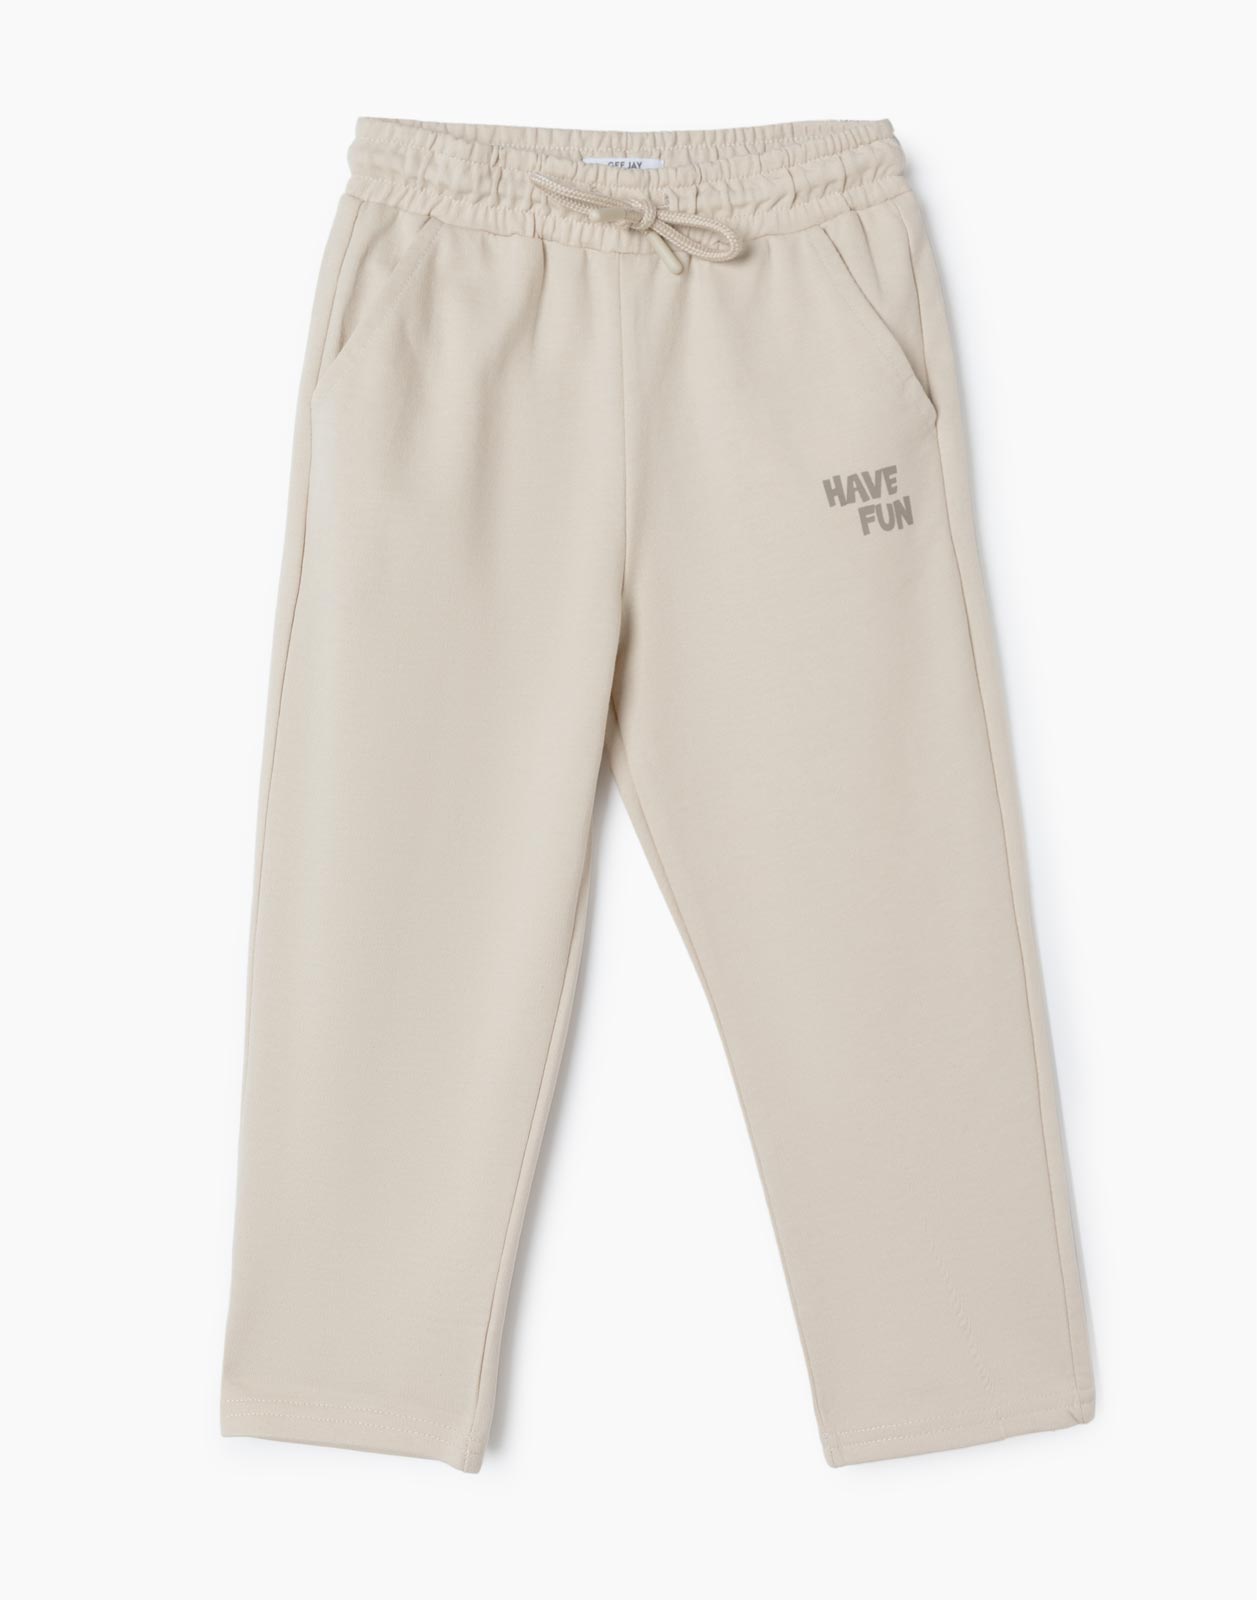 Бежевые спортивные брюки Comfort с надписью Have Fun для мальчика р.128